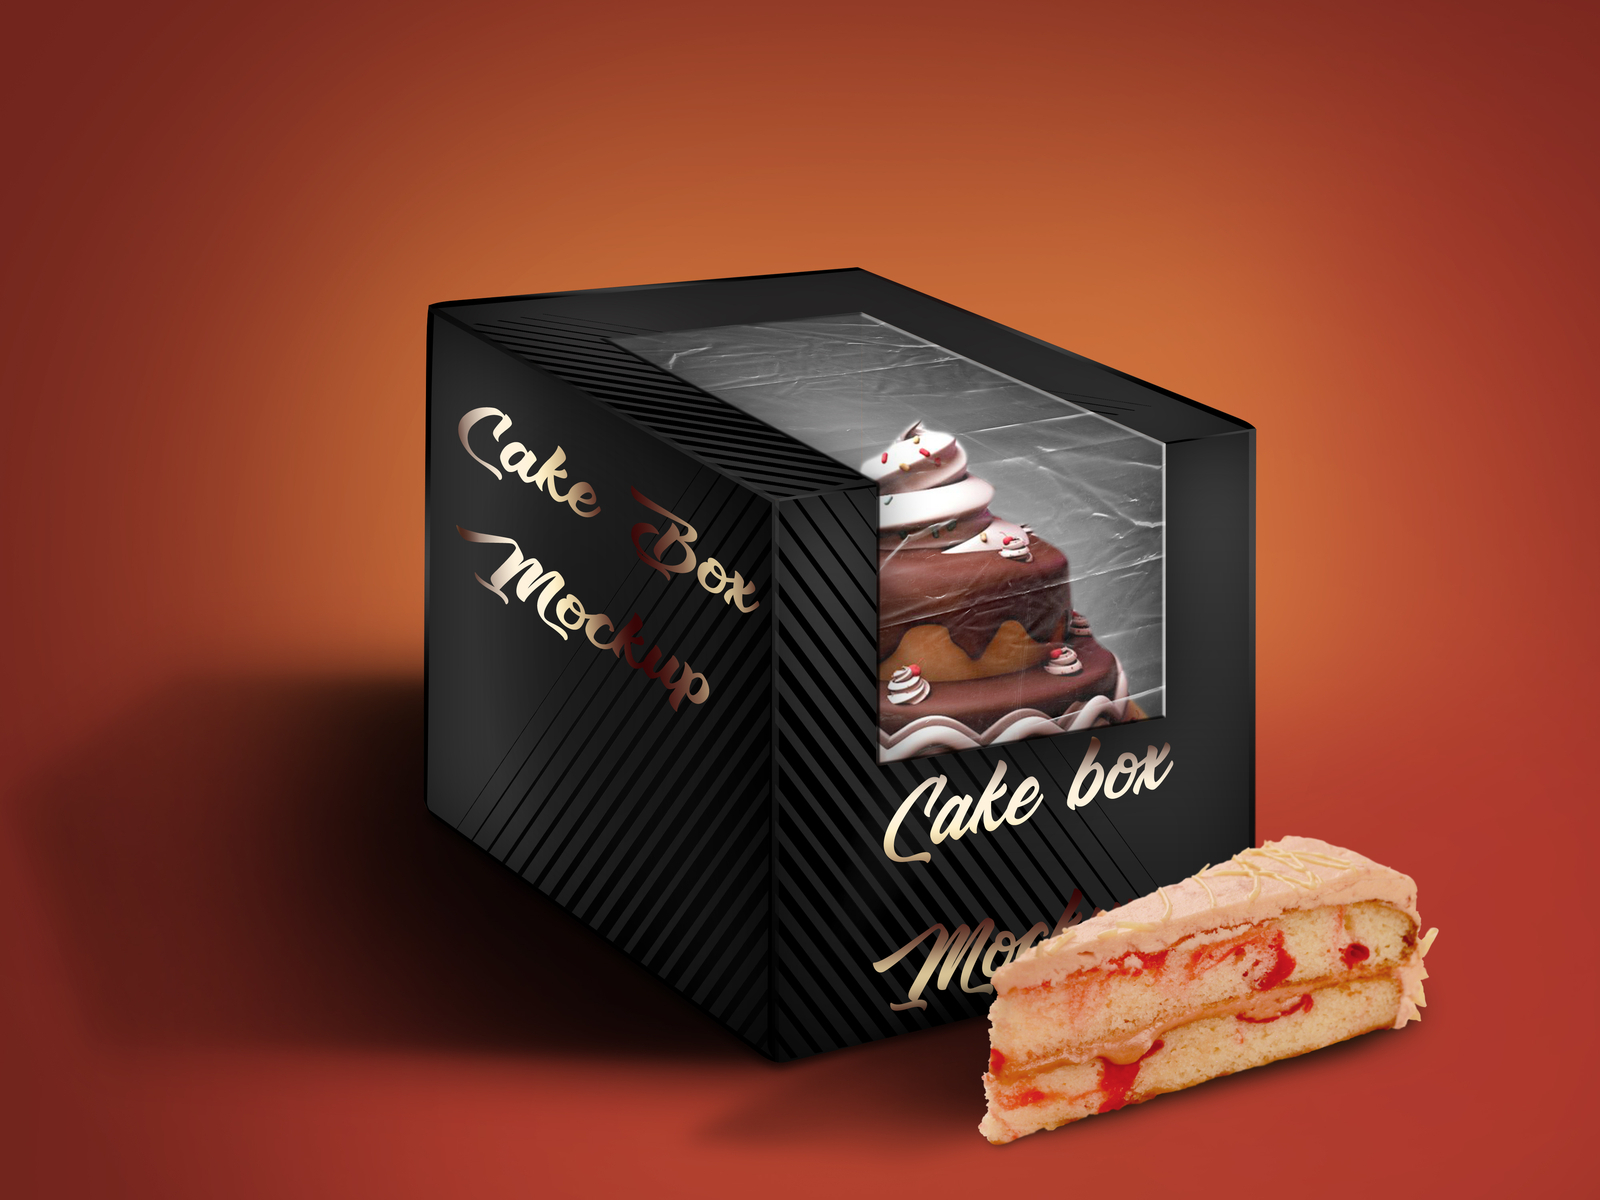 Cake Box Mockup - Free Vectors & PSDs to Download